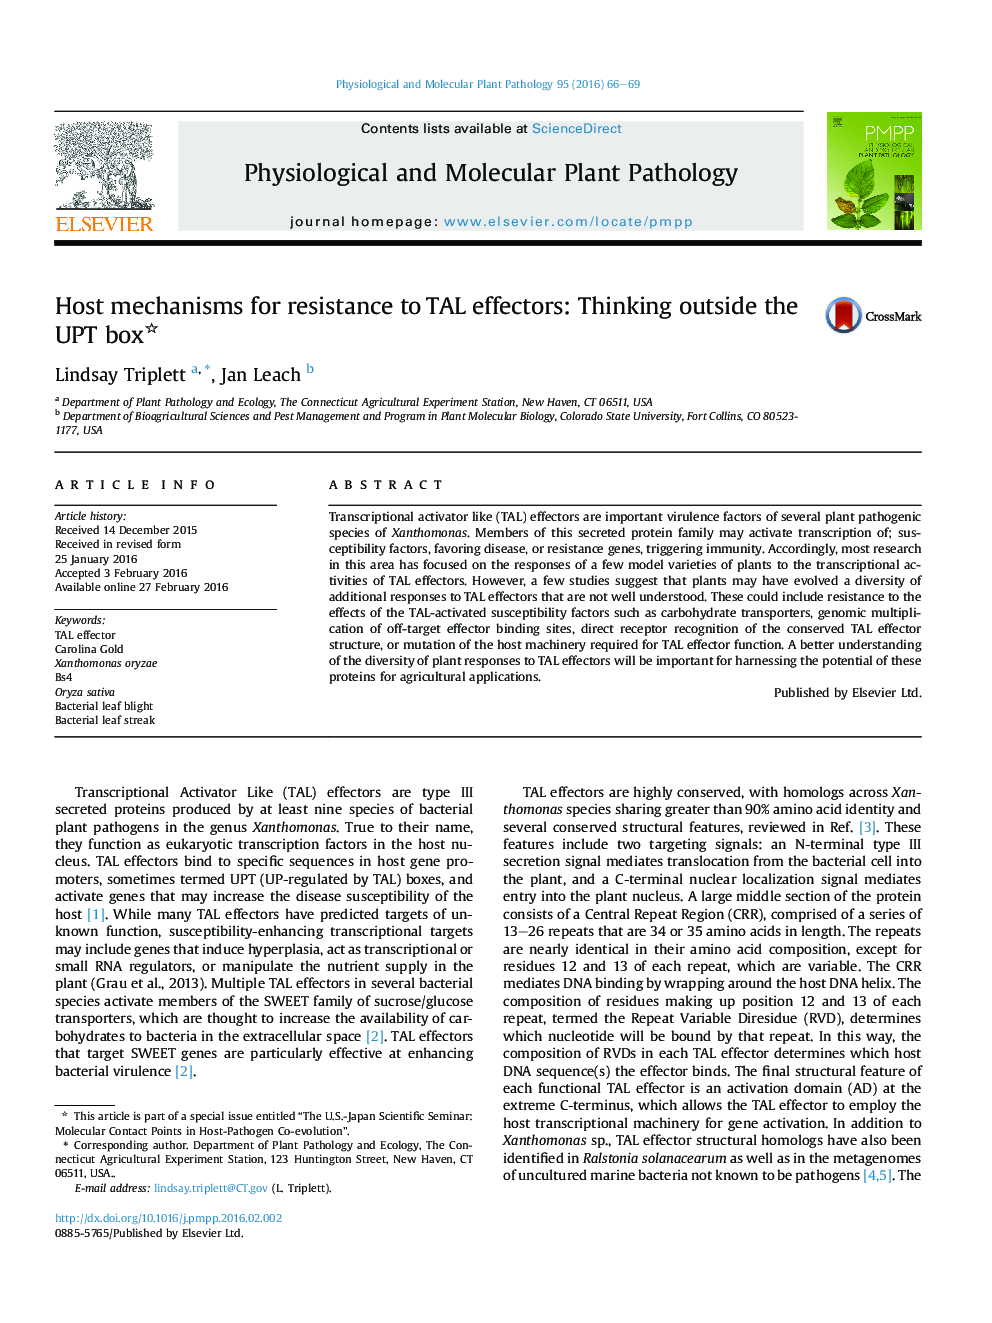 مکانیسم های میزبان برای مقاومت نسبت به اثرات TAL: فکر کردن خارج از UPTobox